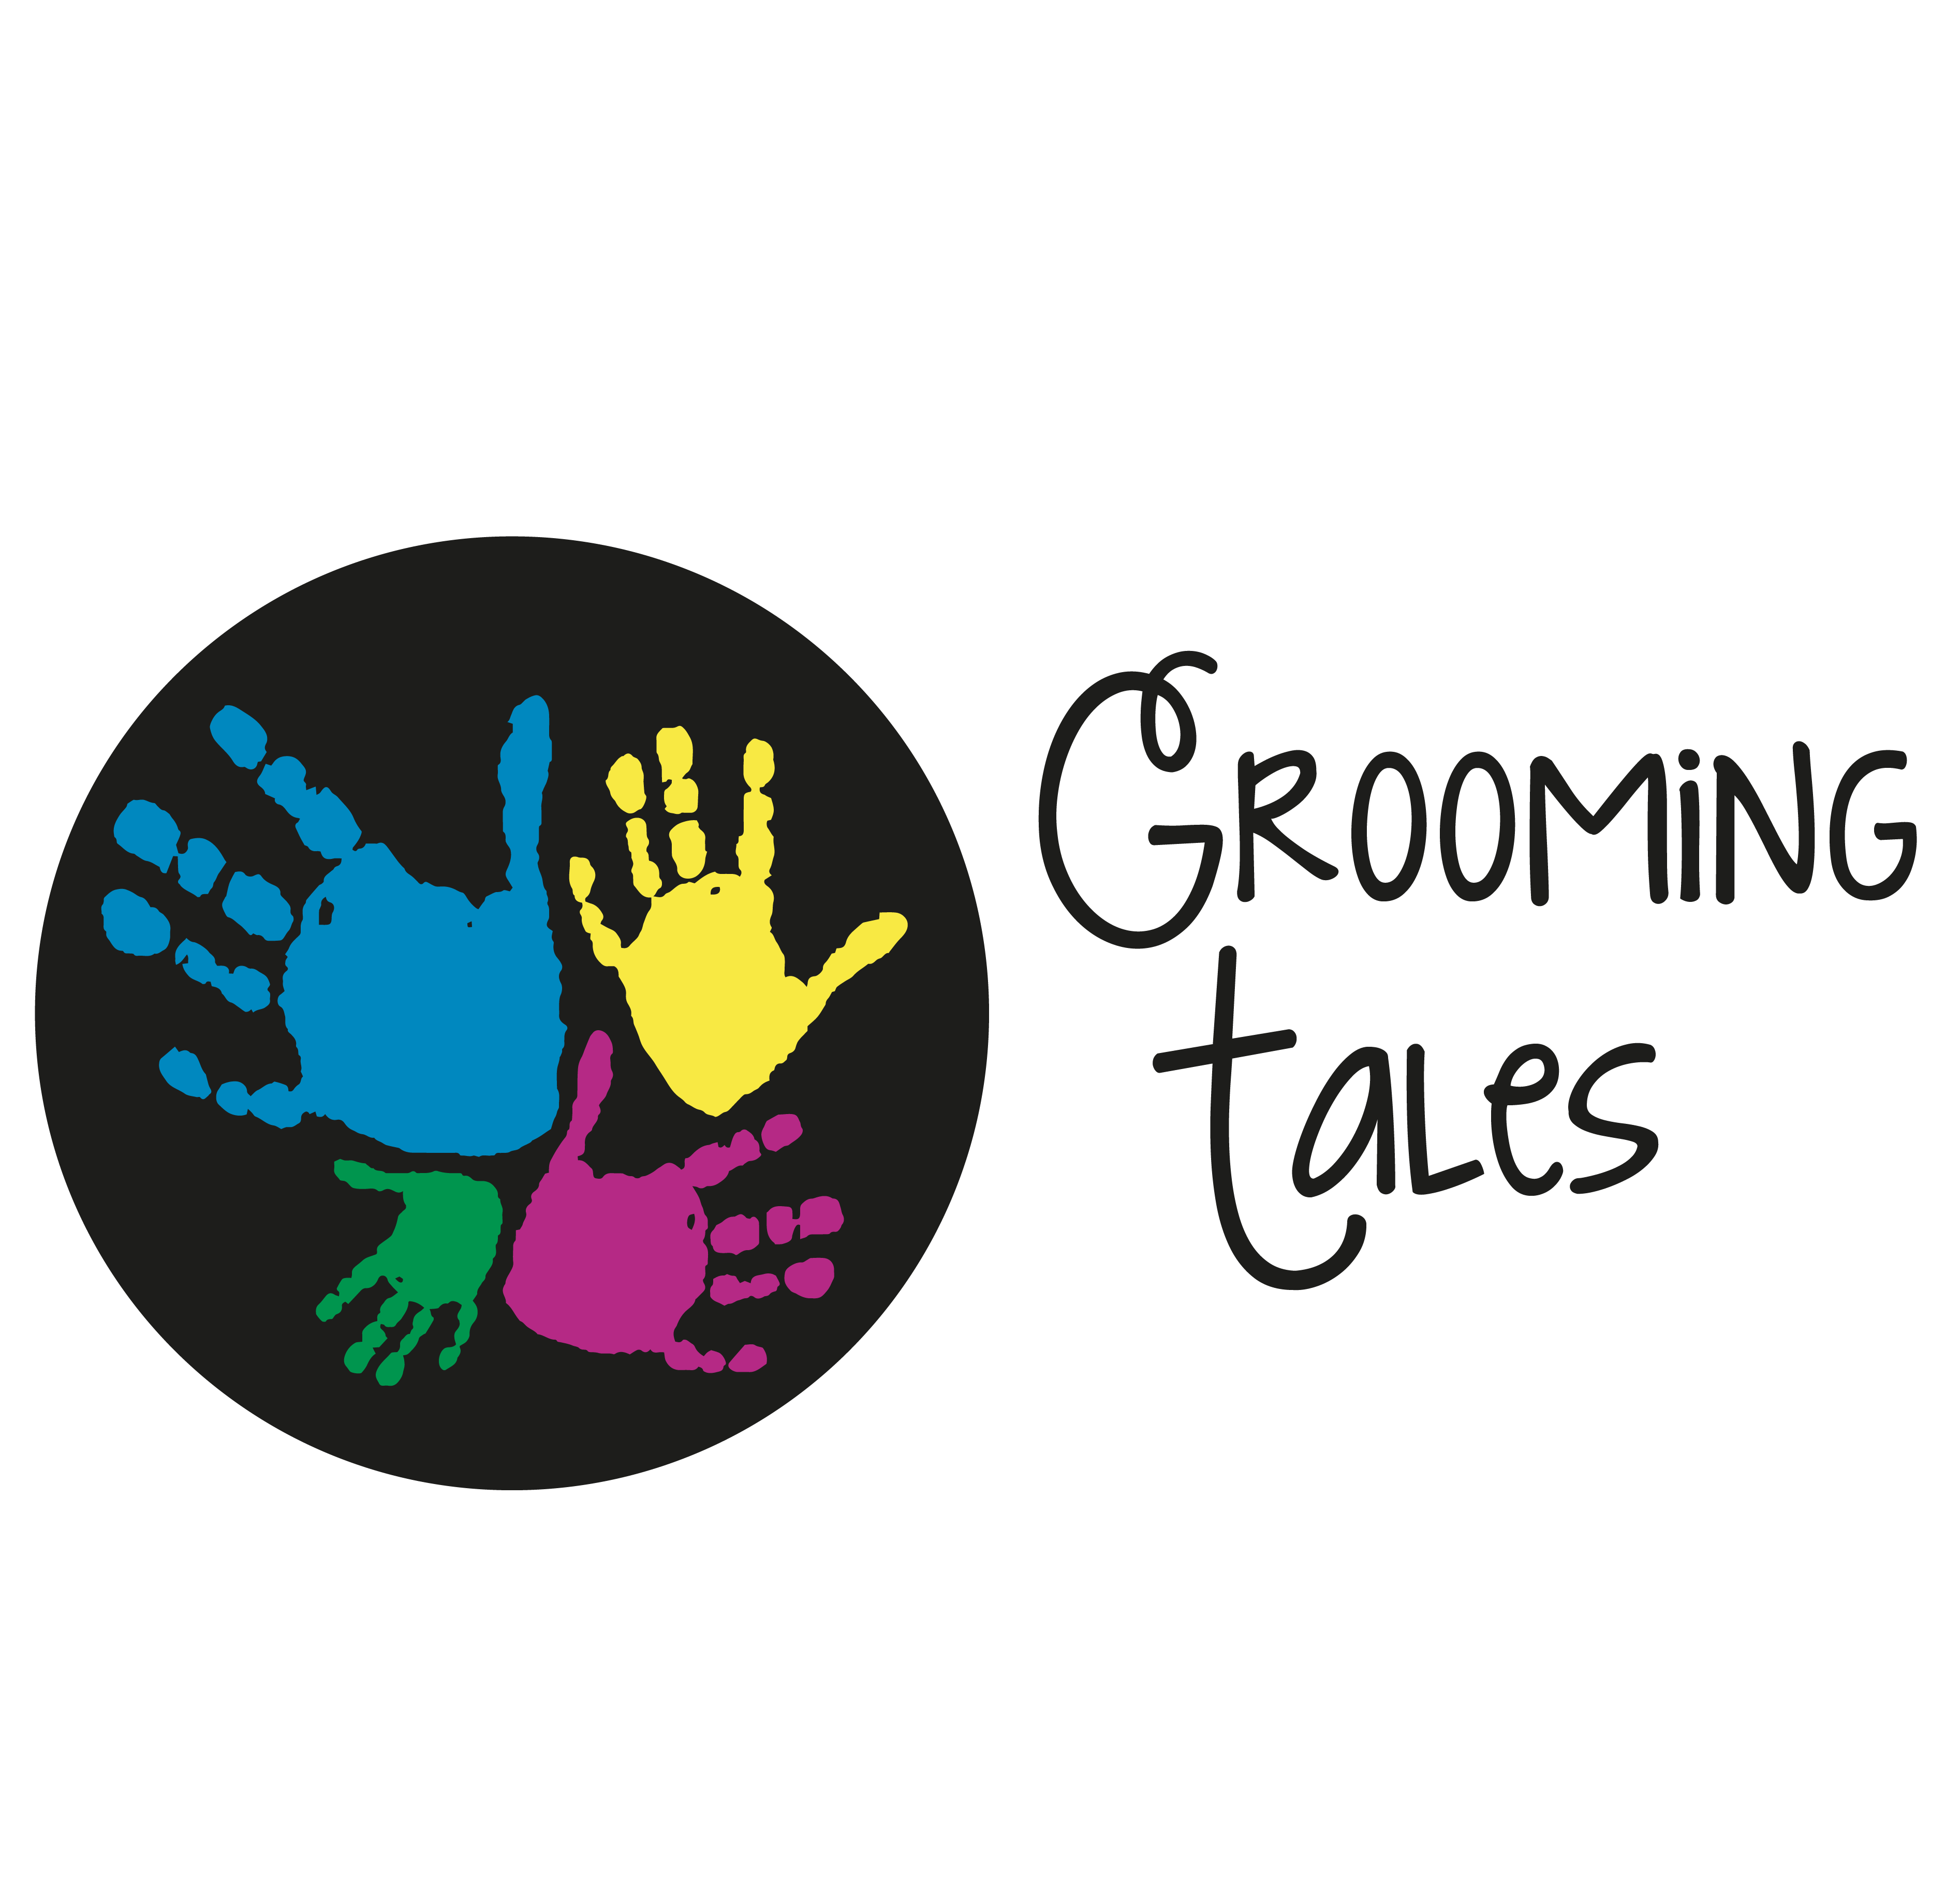 Grooming Tales